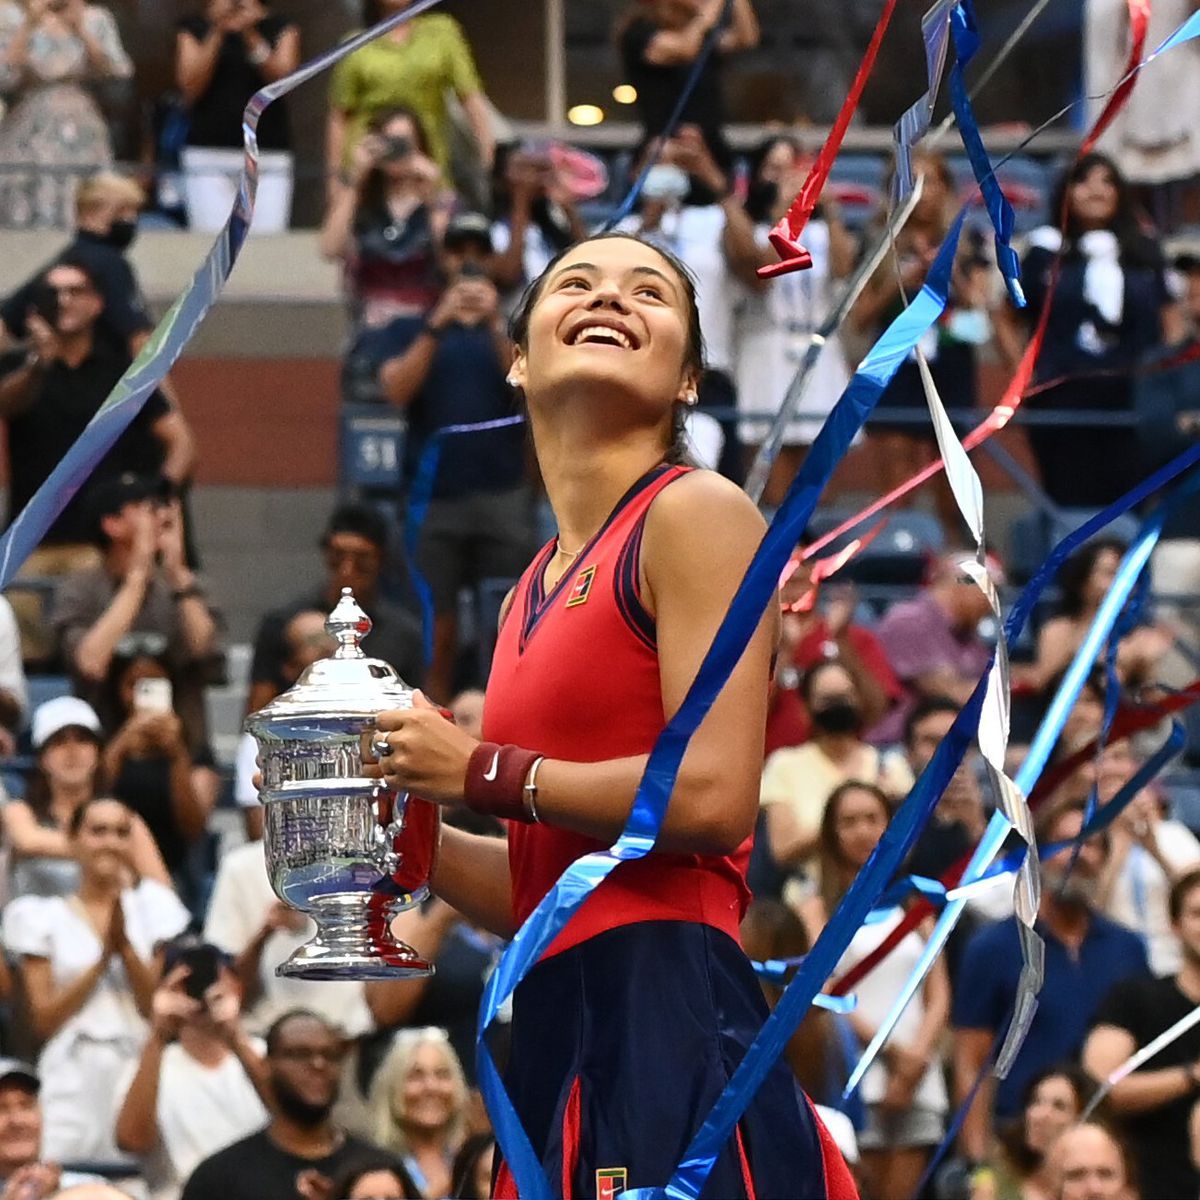 FOTO Emma Răducanu - Leylah Fernandez, US Open 11.09.2021